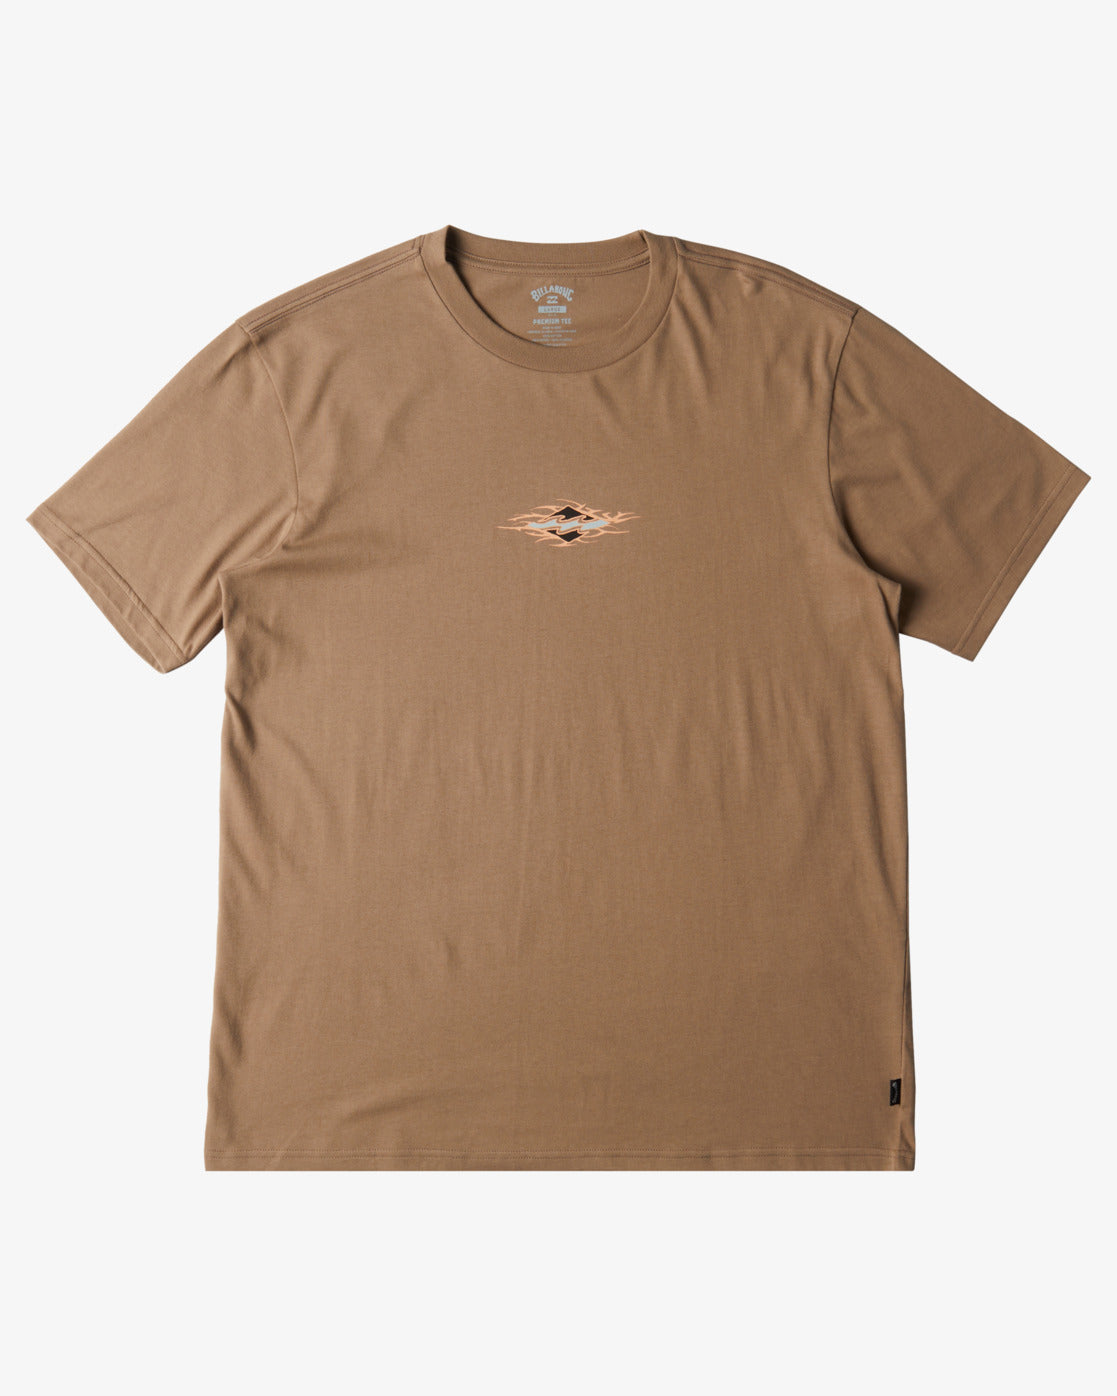 Billabong Tall Tale T-Shirt - Walnut